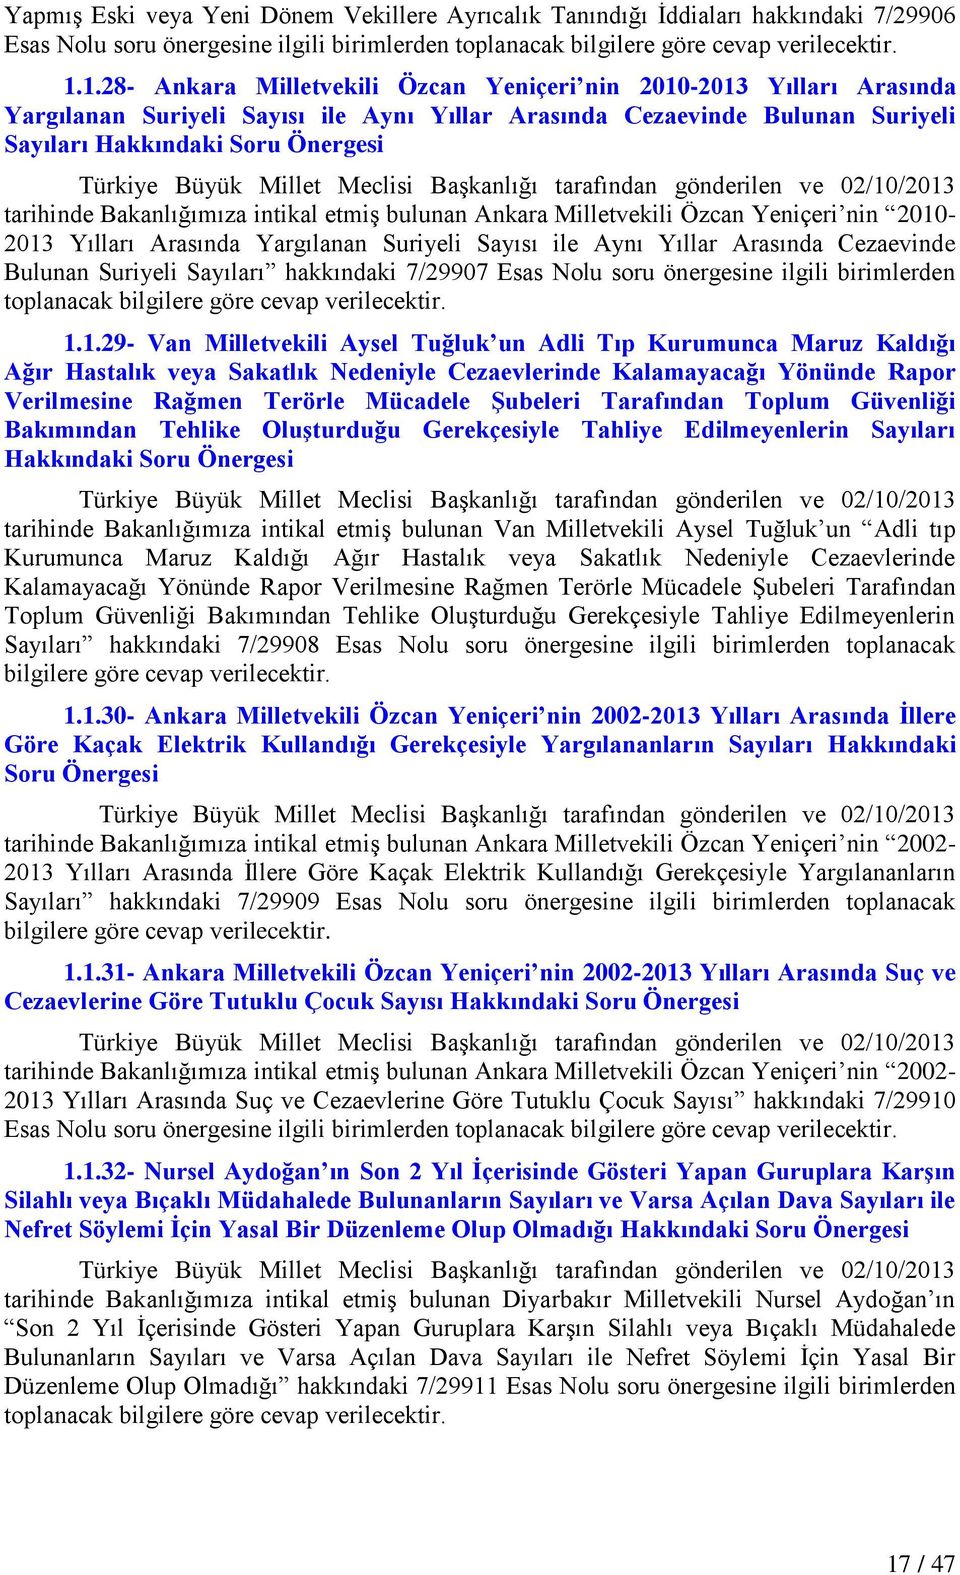 bulunan Ankara Milletvekili Özcan Yeniçeri nin 2010-2013 Yılları Arasında Yargılanan Suriyeli Sayısı ile Aynı Yıllar Arasında Cezaevinde Bulunan Suriyeli Sayıları hakkındaki 7/29907 Esas Nolu soru